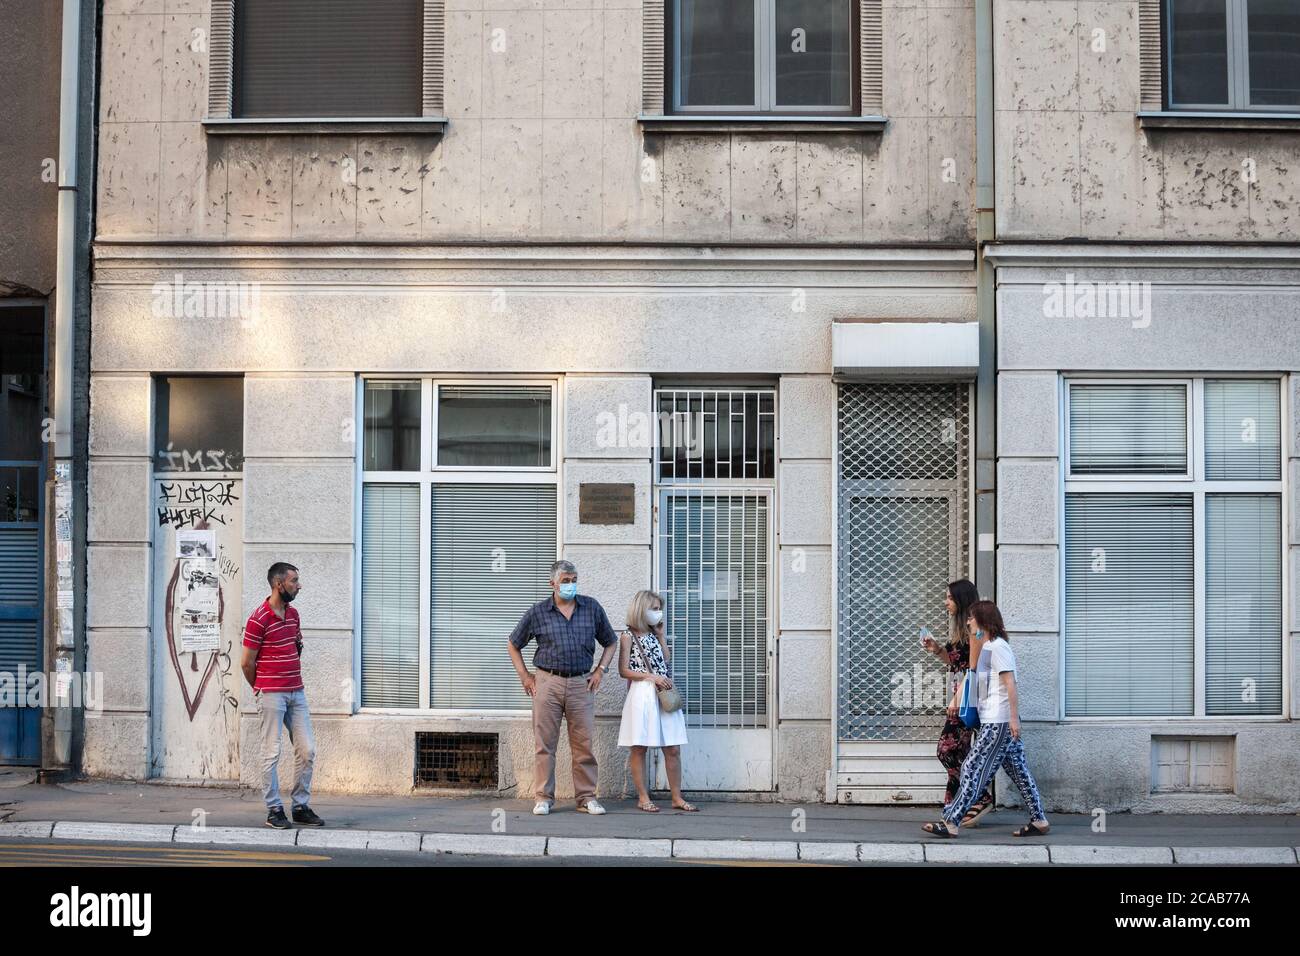 BELGRAD, SERBIEN - 21. JULI 2020: Vier Personen, jung und alt, Männer und Frauen, warten auf einen Laden auf einem Boulevard von Belgrad mit Gesichtsmaske pro betreten Stockfoto